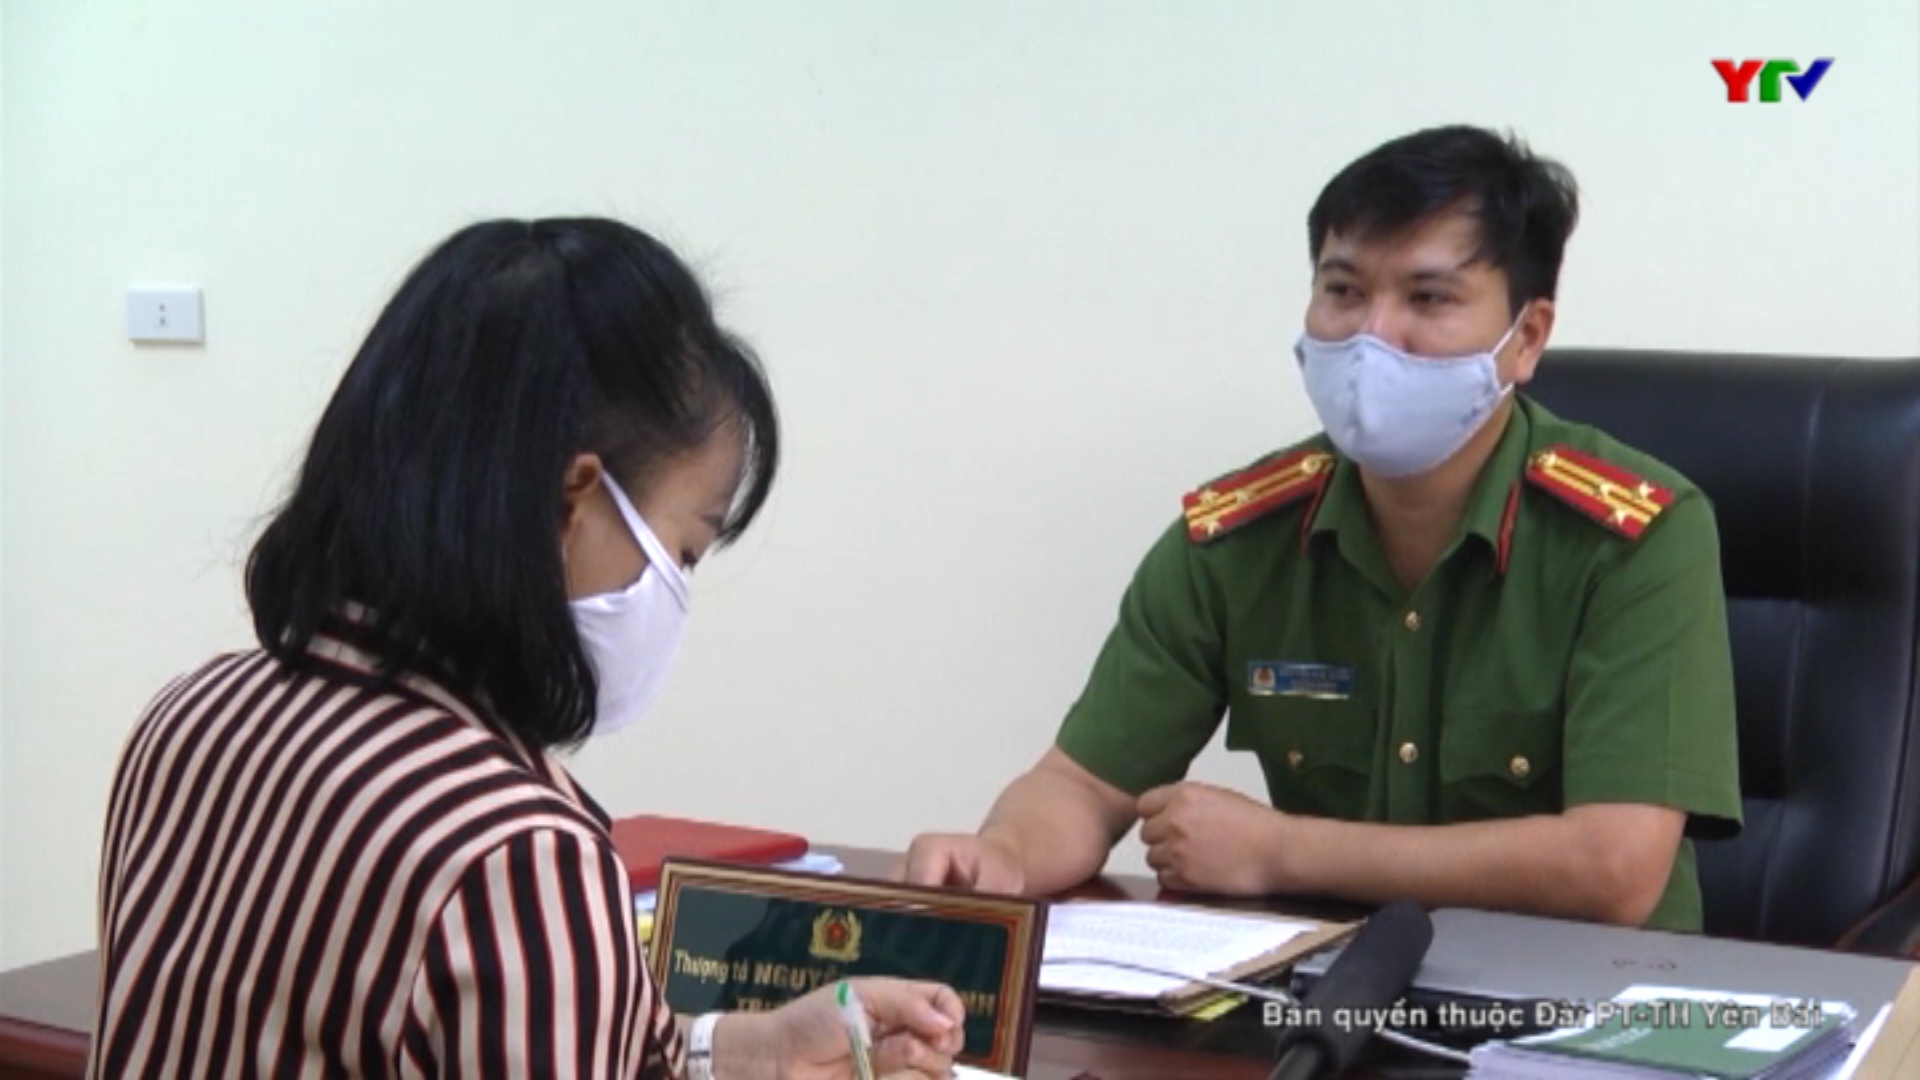 Phỏng vấn Thượng tá Nguyễn Kim Oanh - Trưởng phòng Cảnh sát PCCC và CNCH, Công an tỉnh Yên Bái.